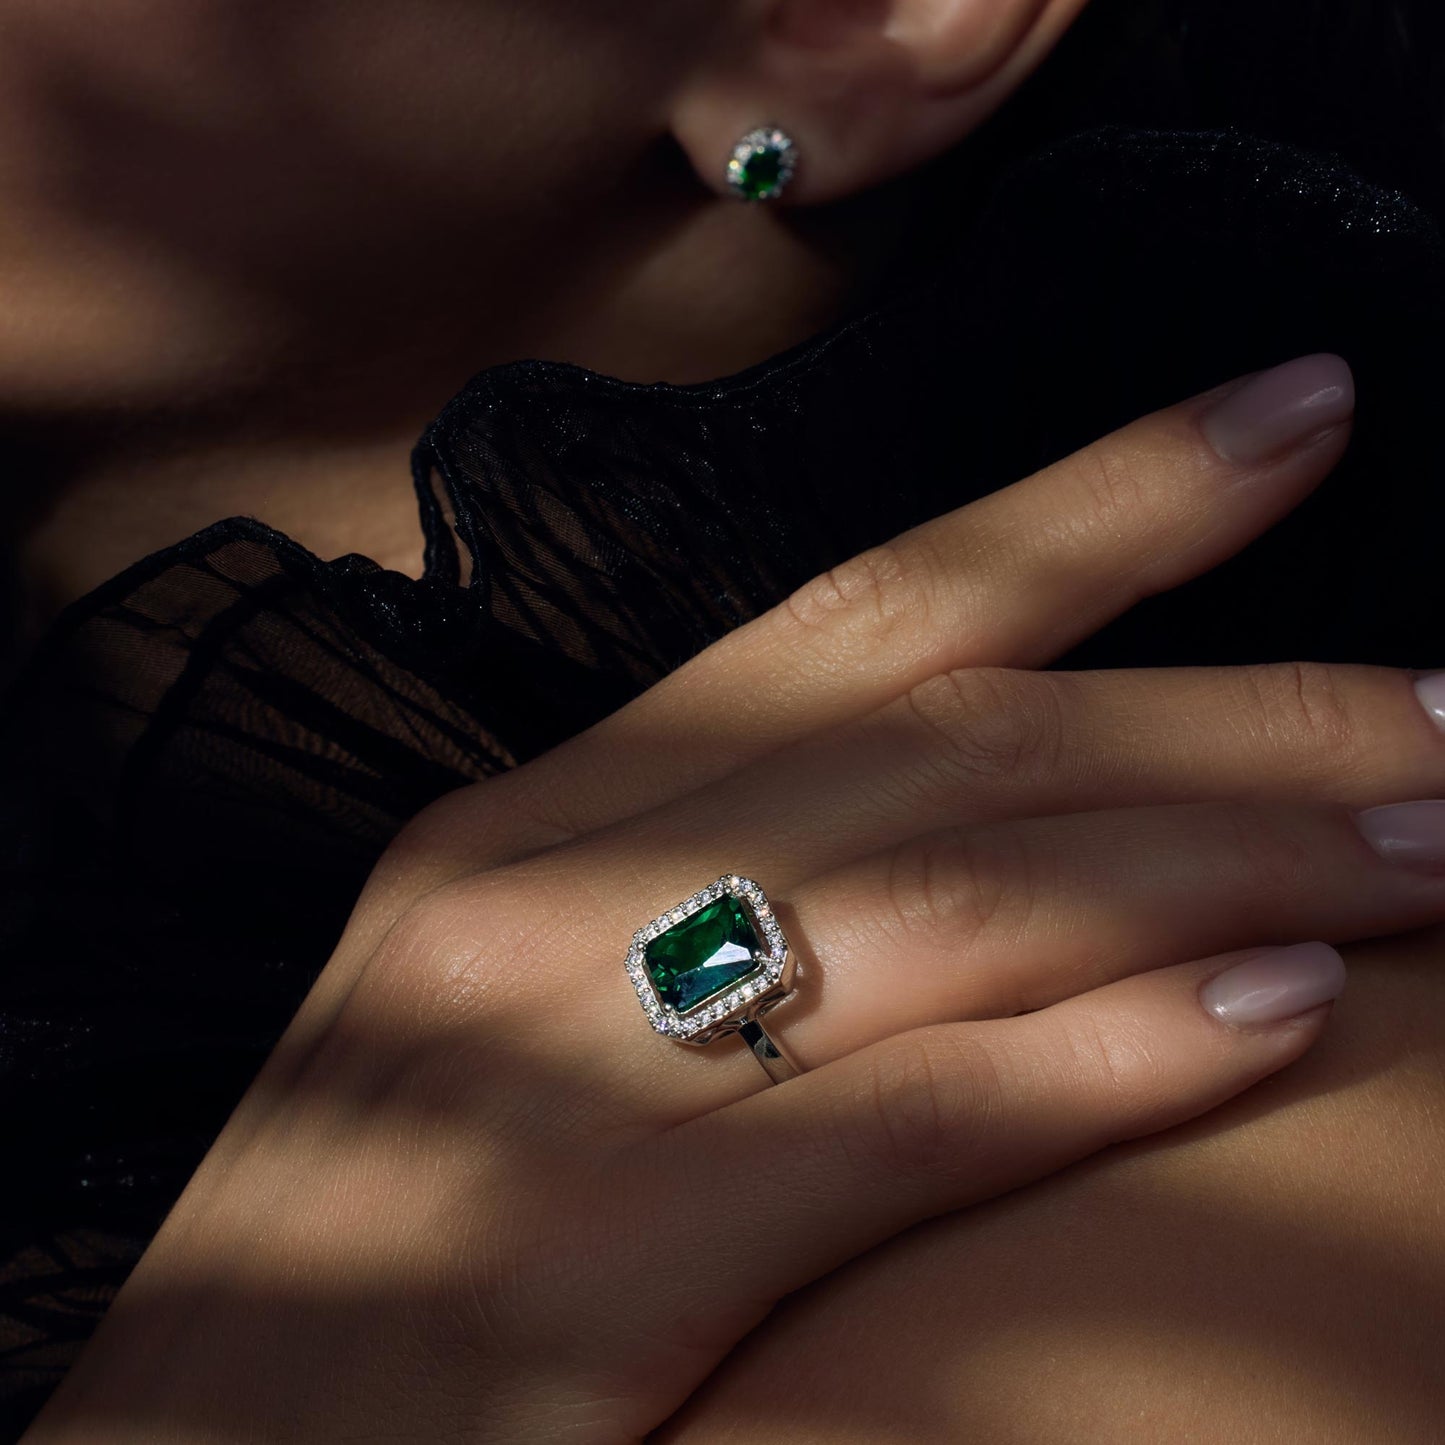 Mia Colore Verdi anello in argento sterling 925 con pietra zircone verde